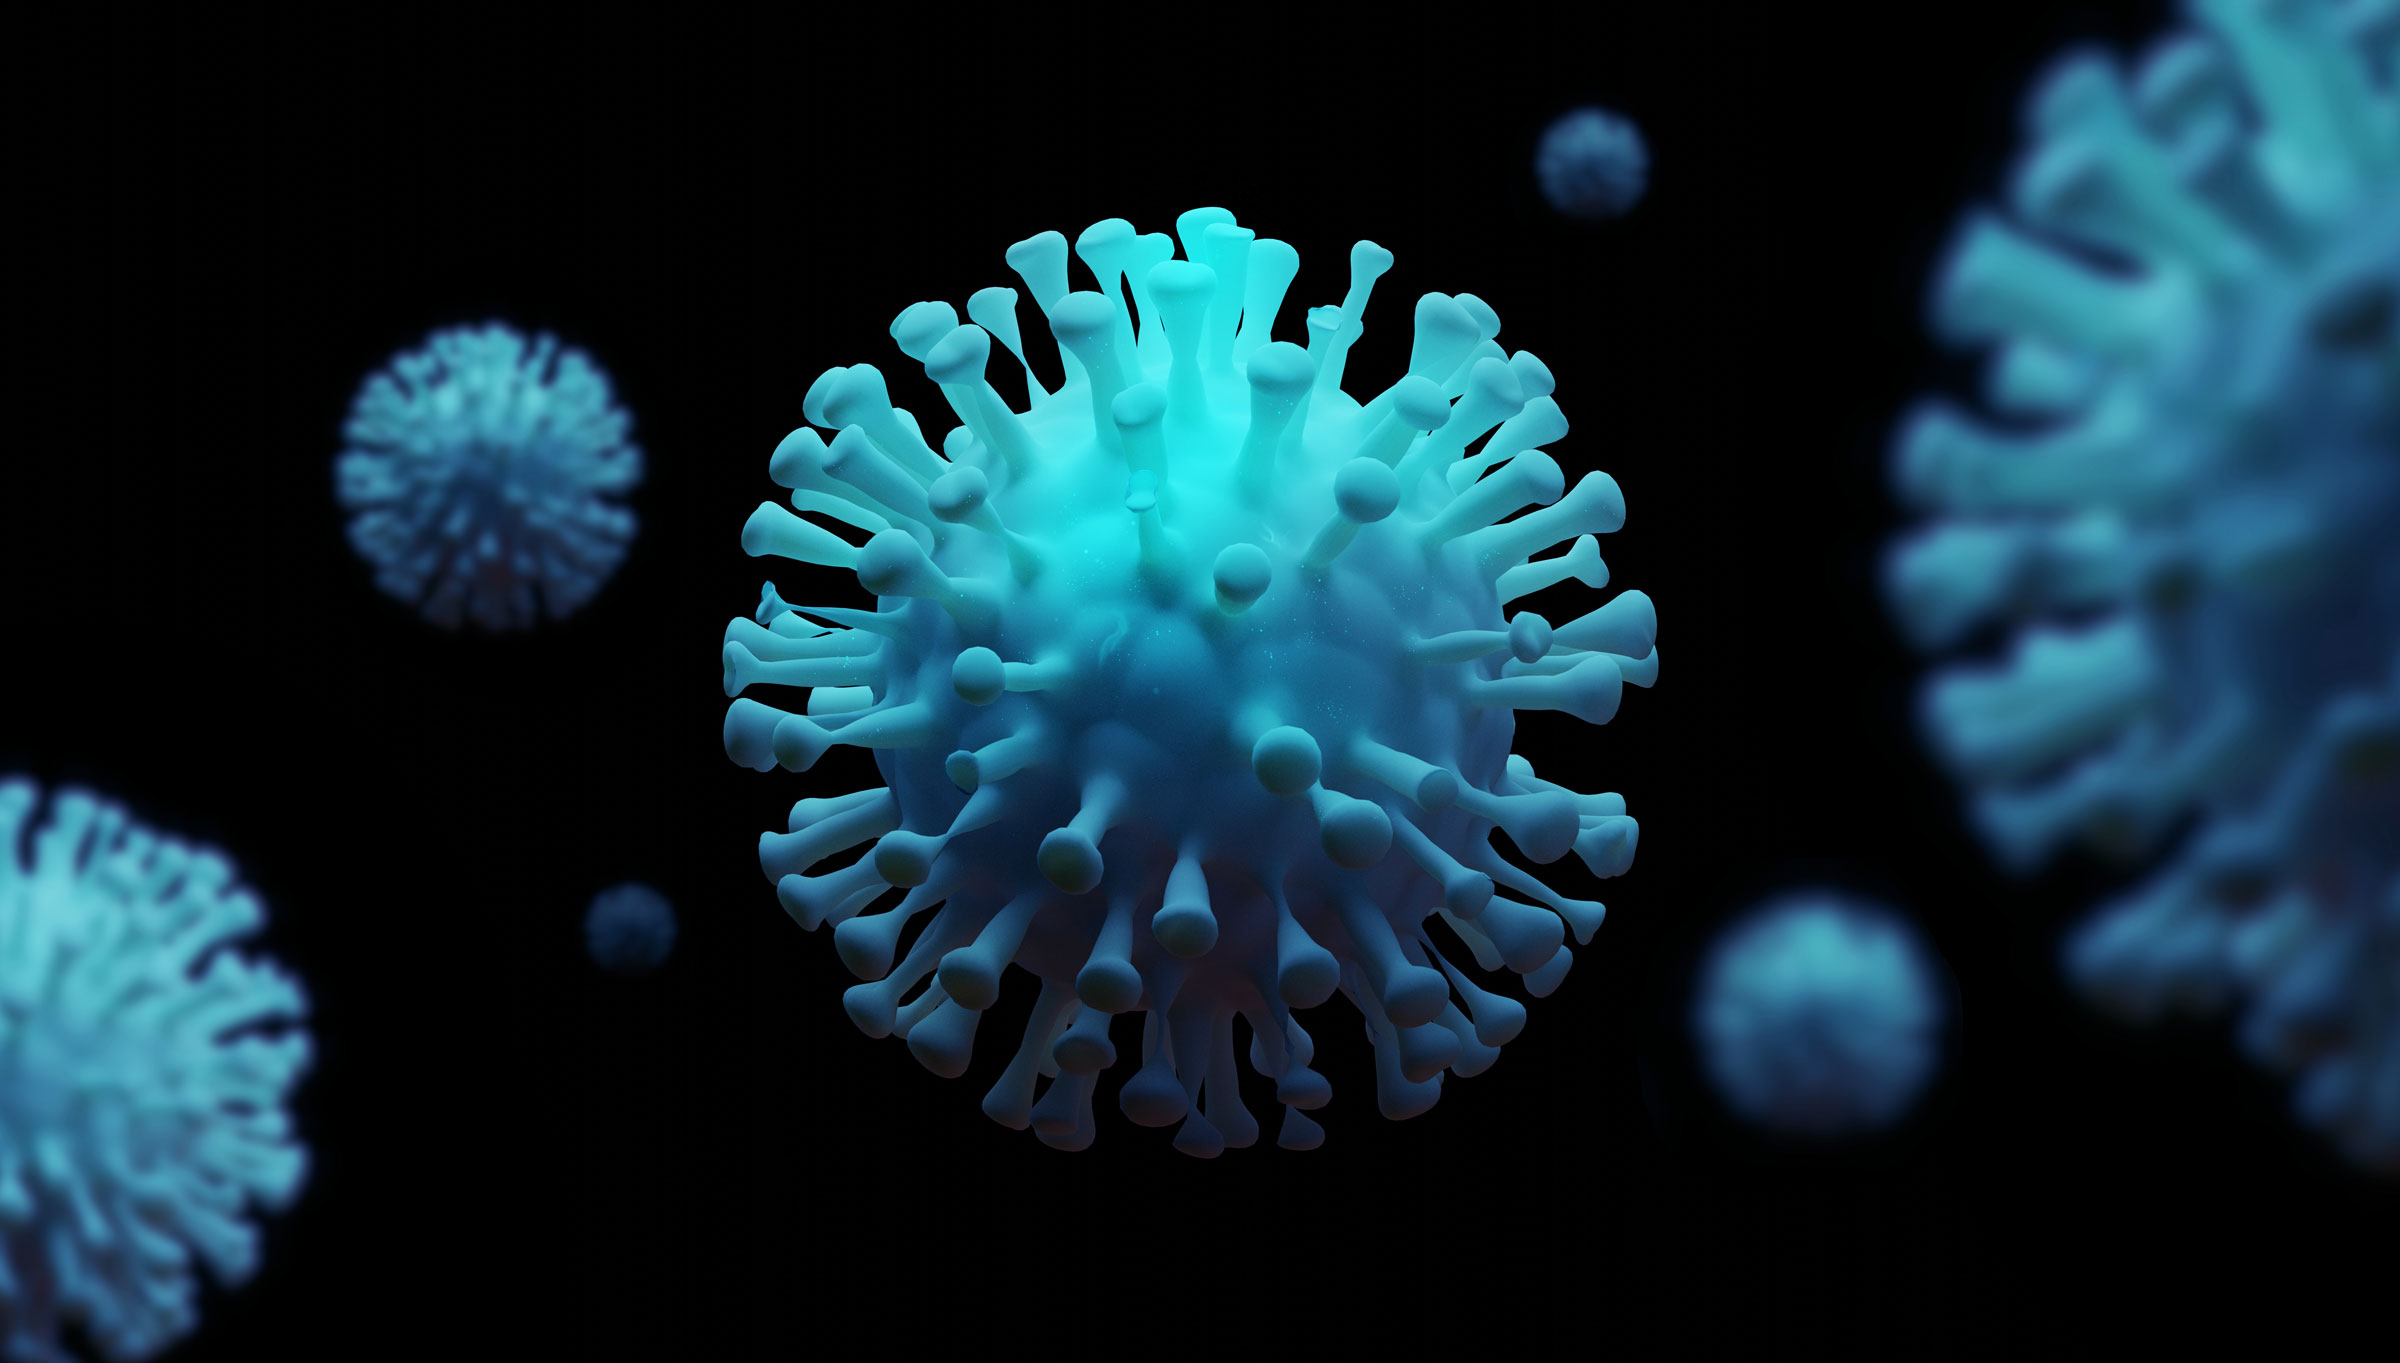 Coronavirus Image